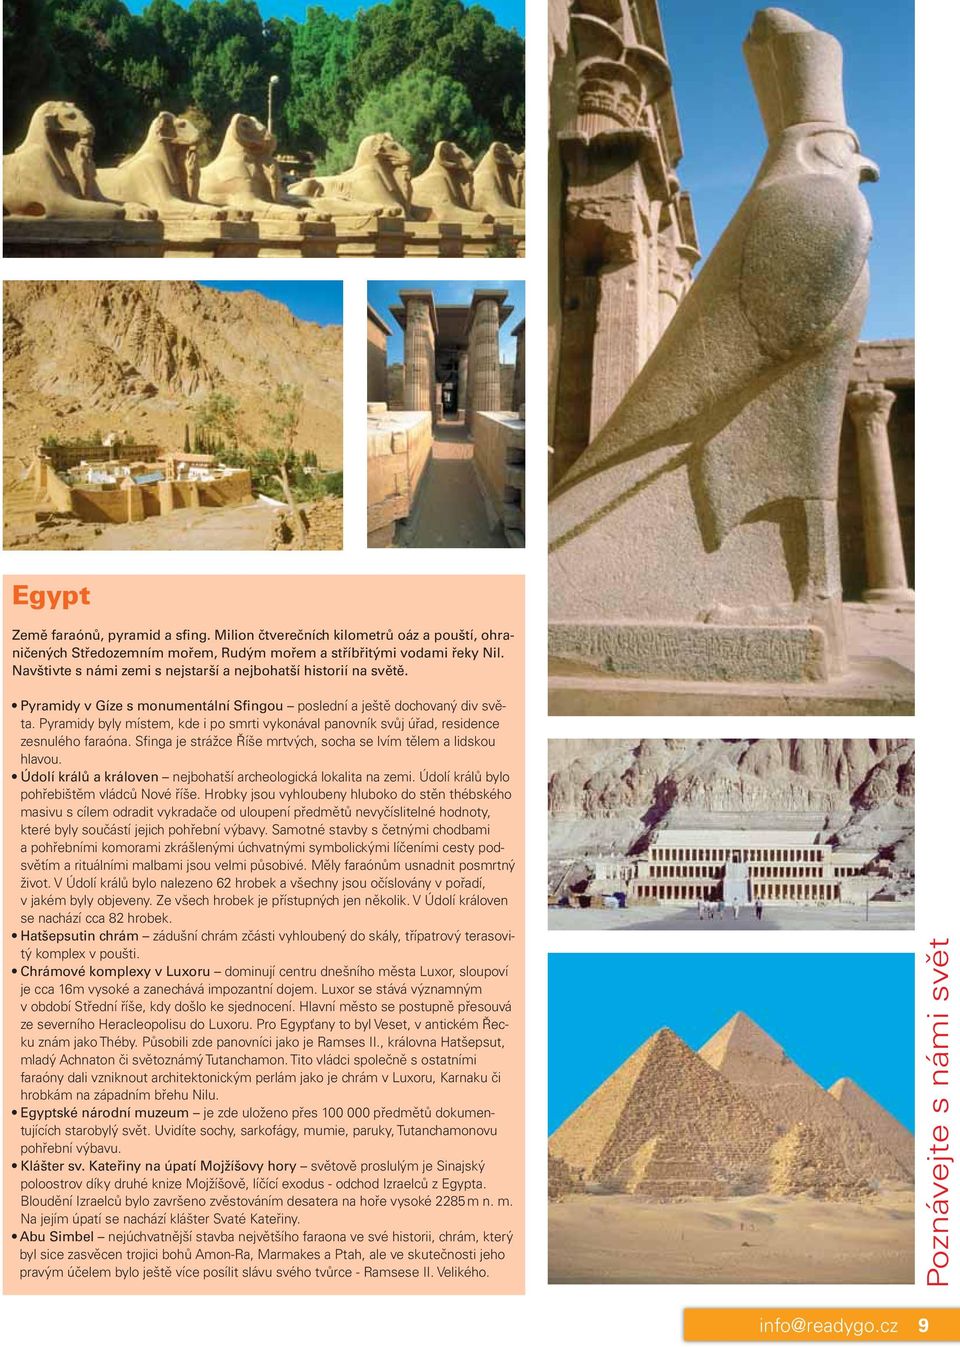 Pyramidy byly místem, kde i po smrti vykonával panovník svůj úřad, residence zesnulého faraóna. Sfinga je strážce Říše mrtvých, socha se lvím tělem a lidskou hlavou.